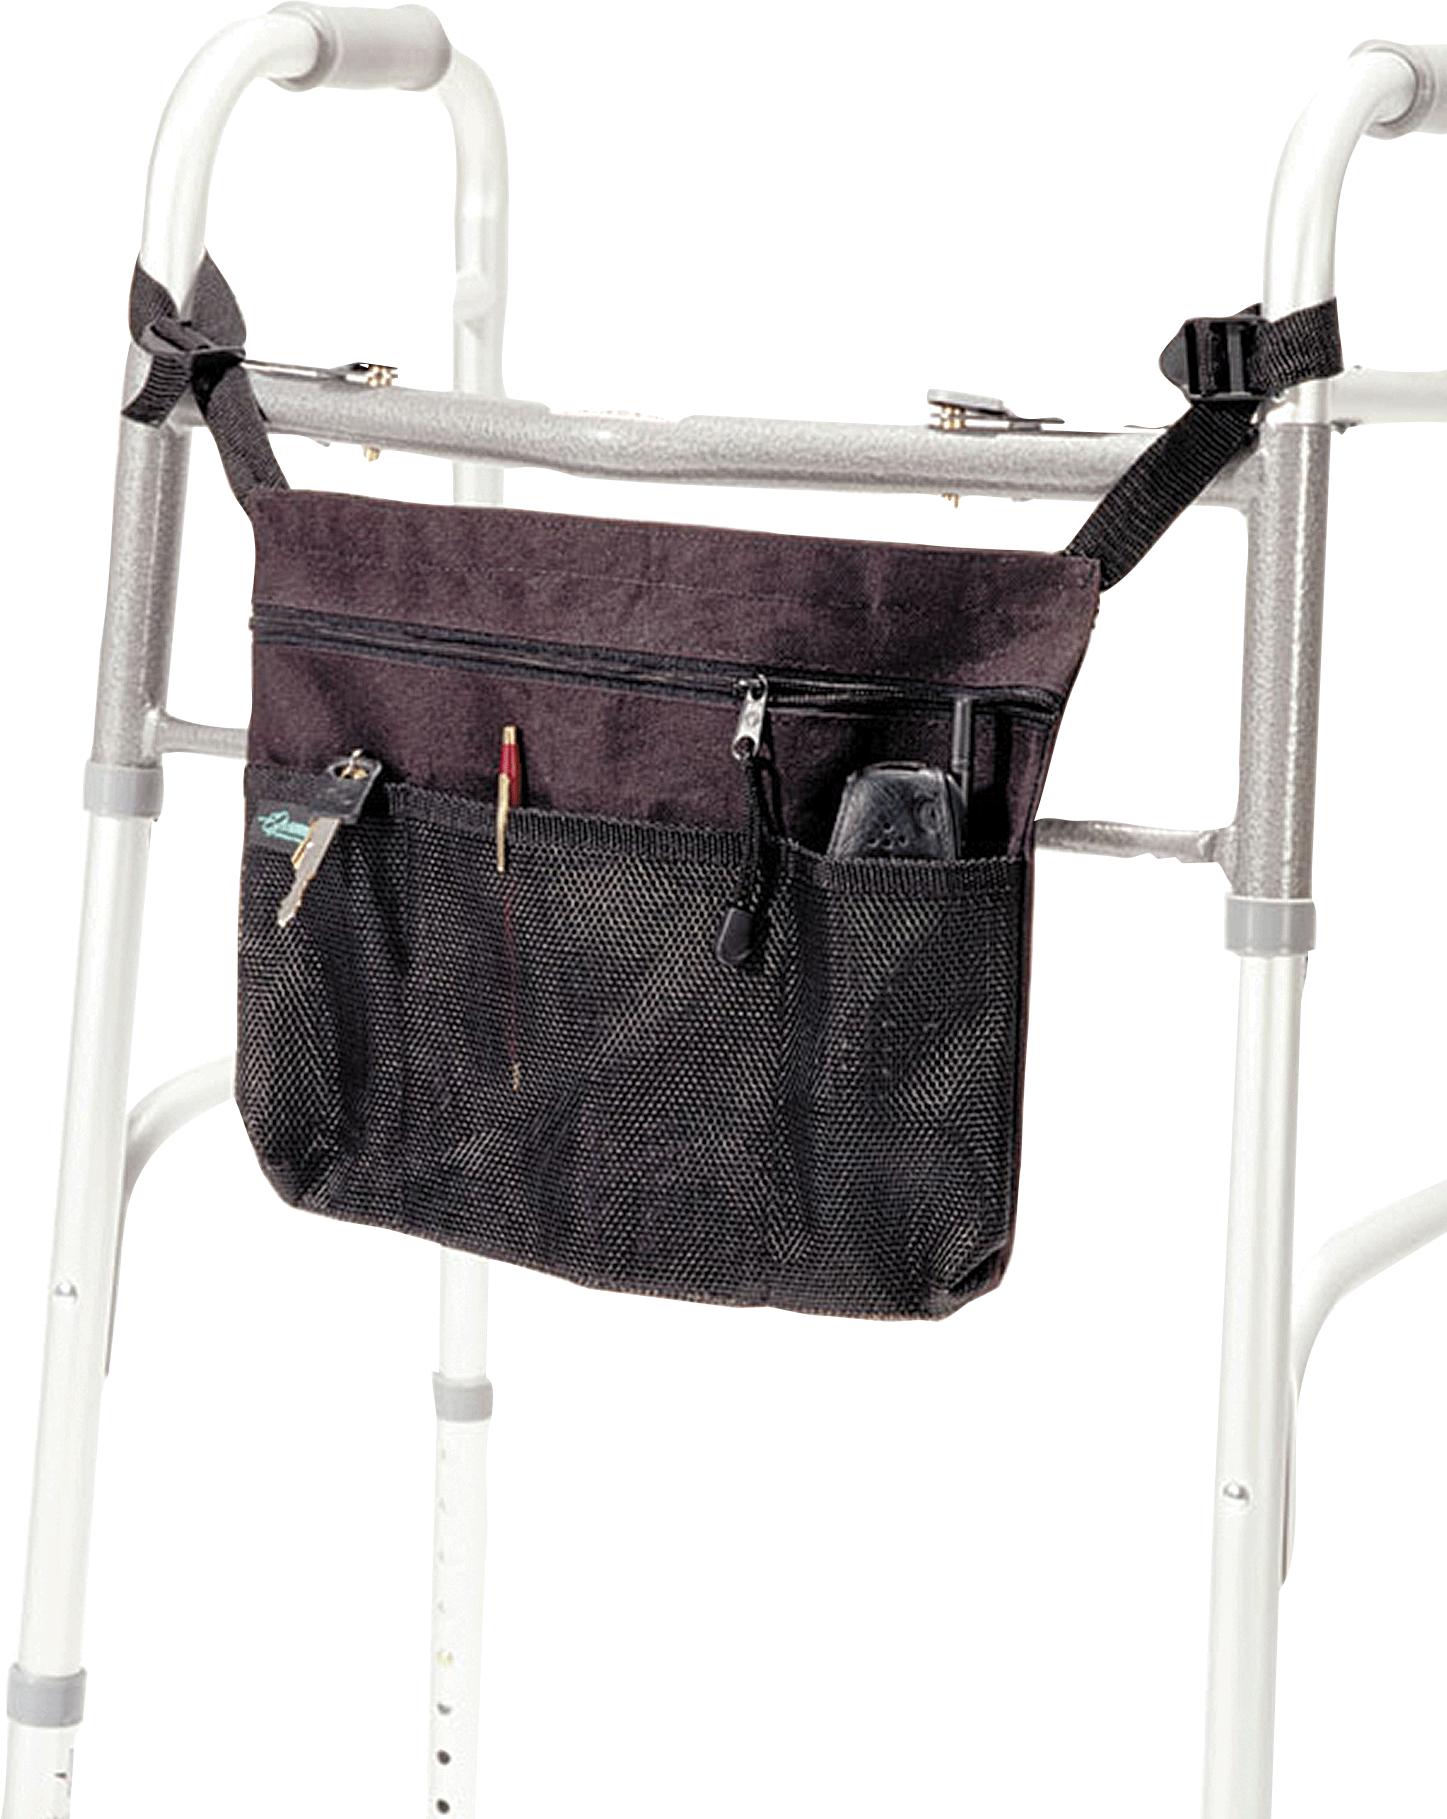 EZ-Access Universal Tote Carry-on Bag/Pouch, Adjustable Straps, EZ0101BK, Large (10 1/2" X 14" X 2")  - 1 Each